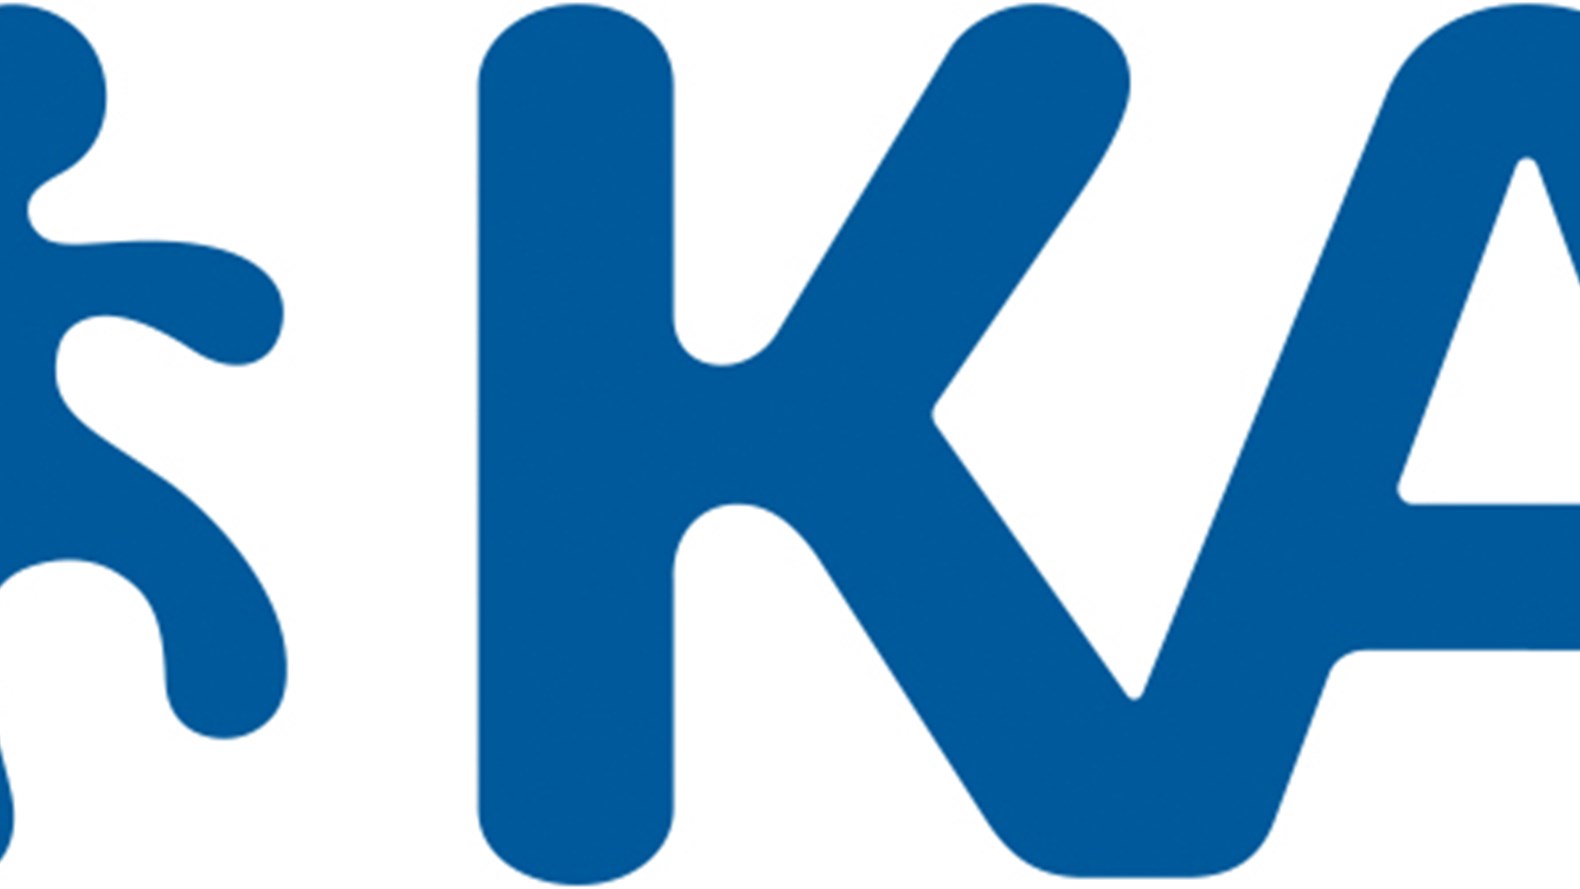 kab_logo.jpg